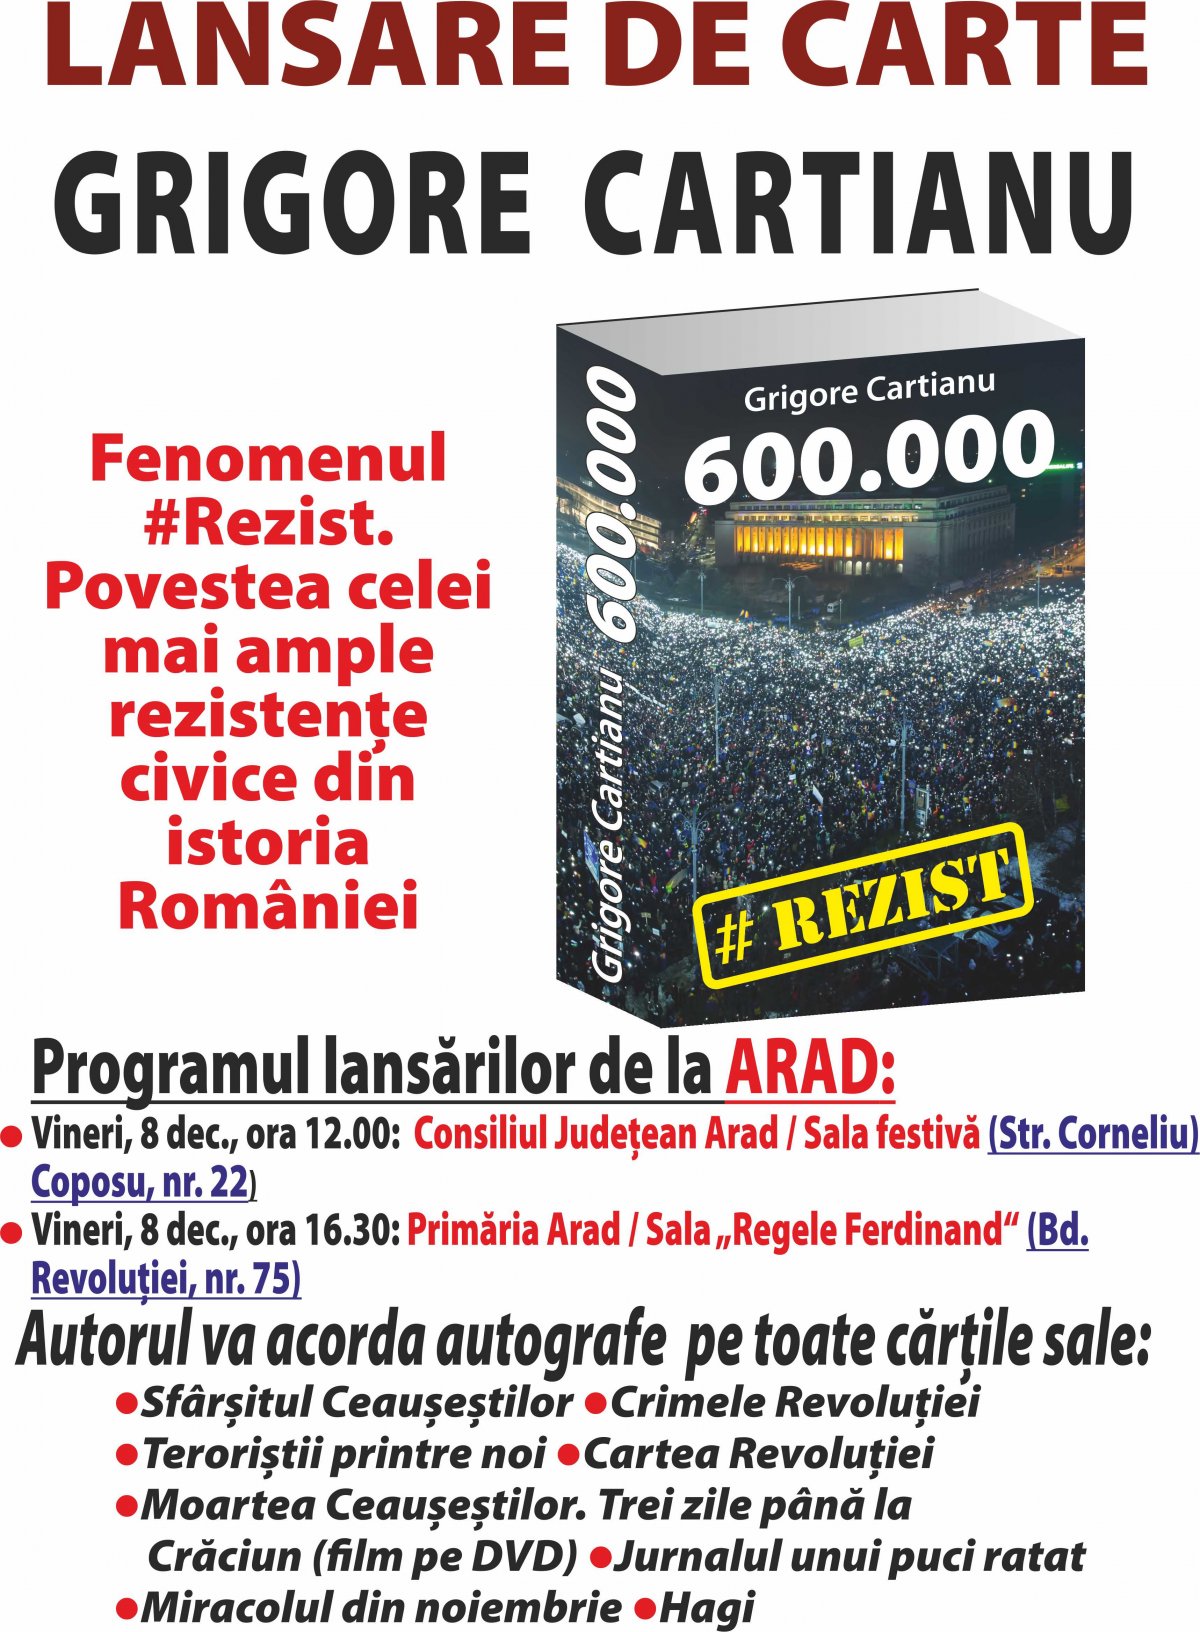 Grigore Cartianu își lansează la Arad noua sa carte: “600.000” - povestea fenomenului #Rezist